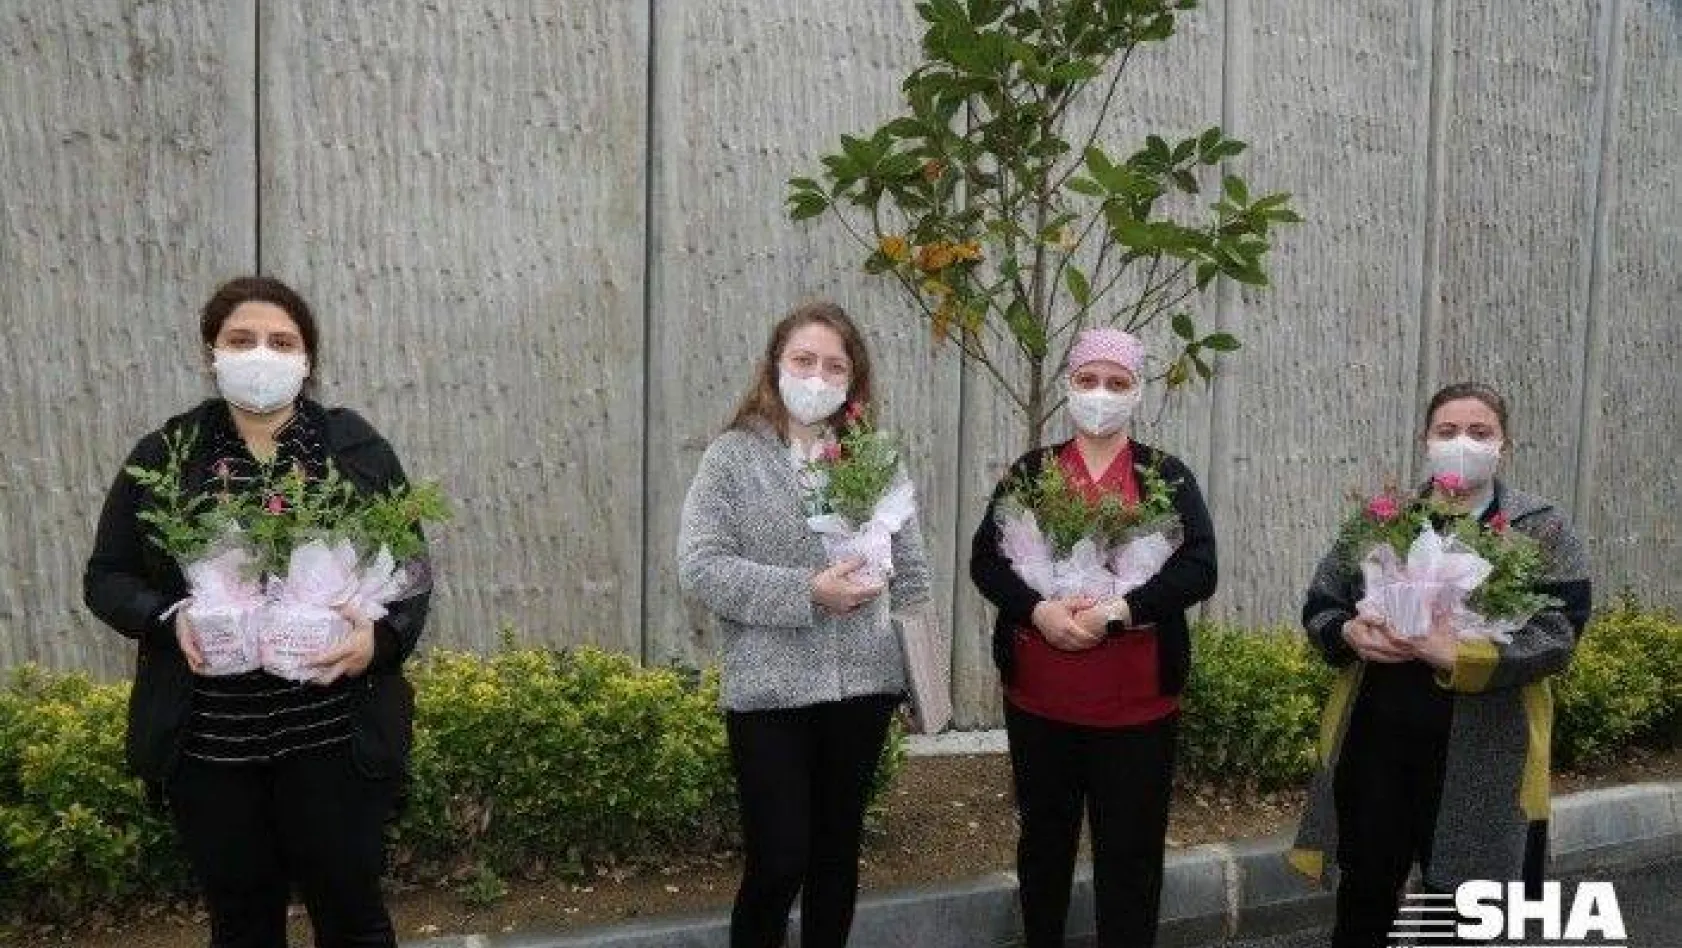 Eyüpsultan'da sağlık çalışanı annelere sürpriz &quotAnneler Günü" kutlaması